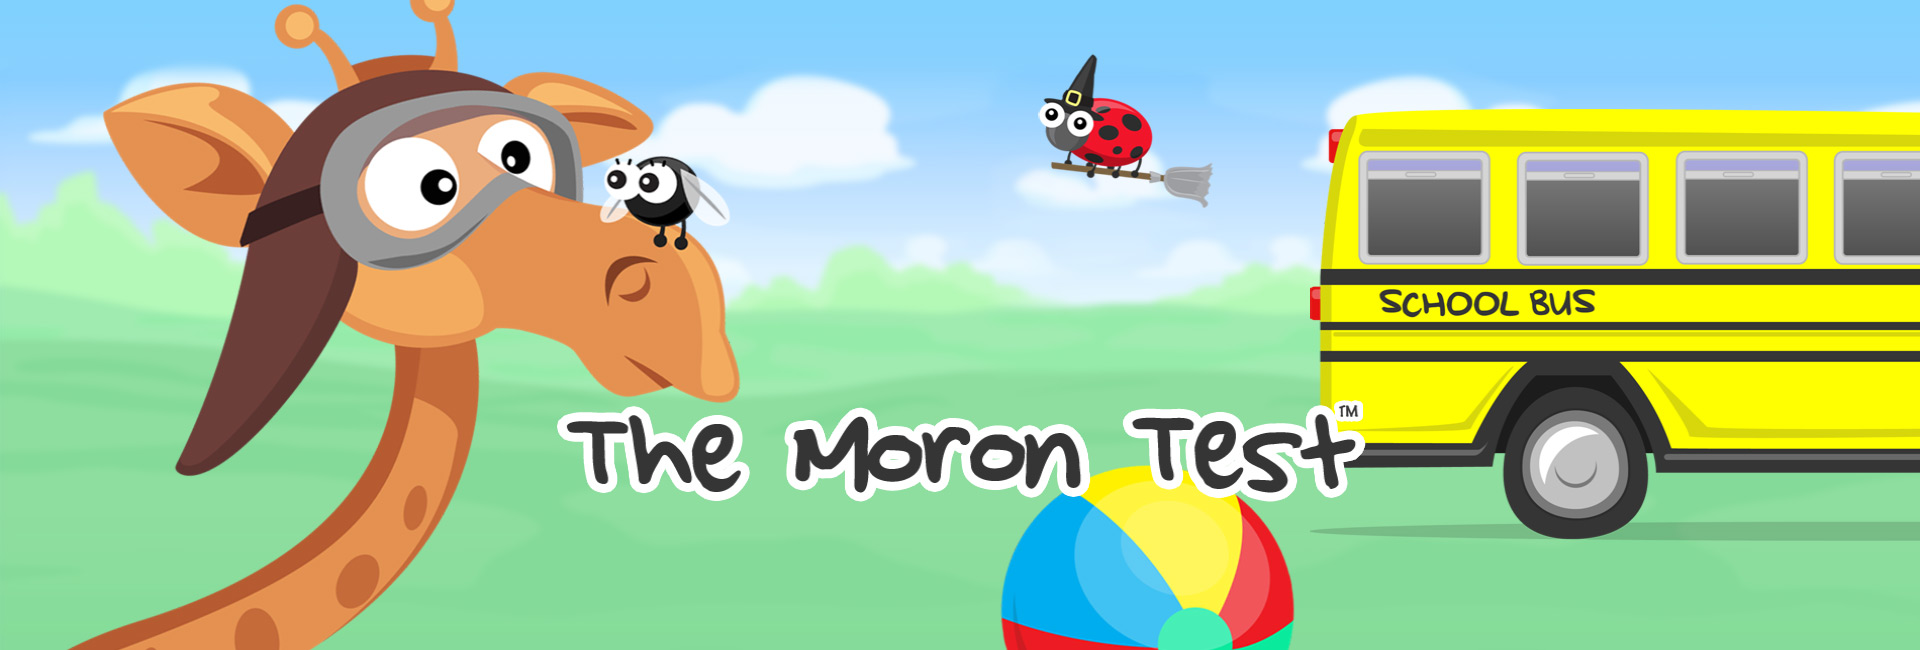 The Moron Test